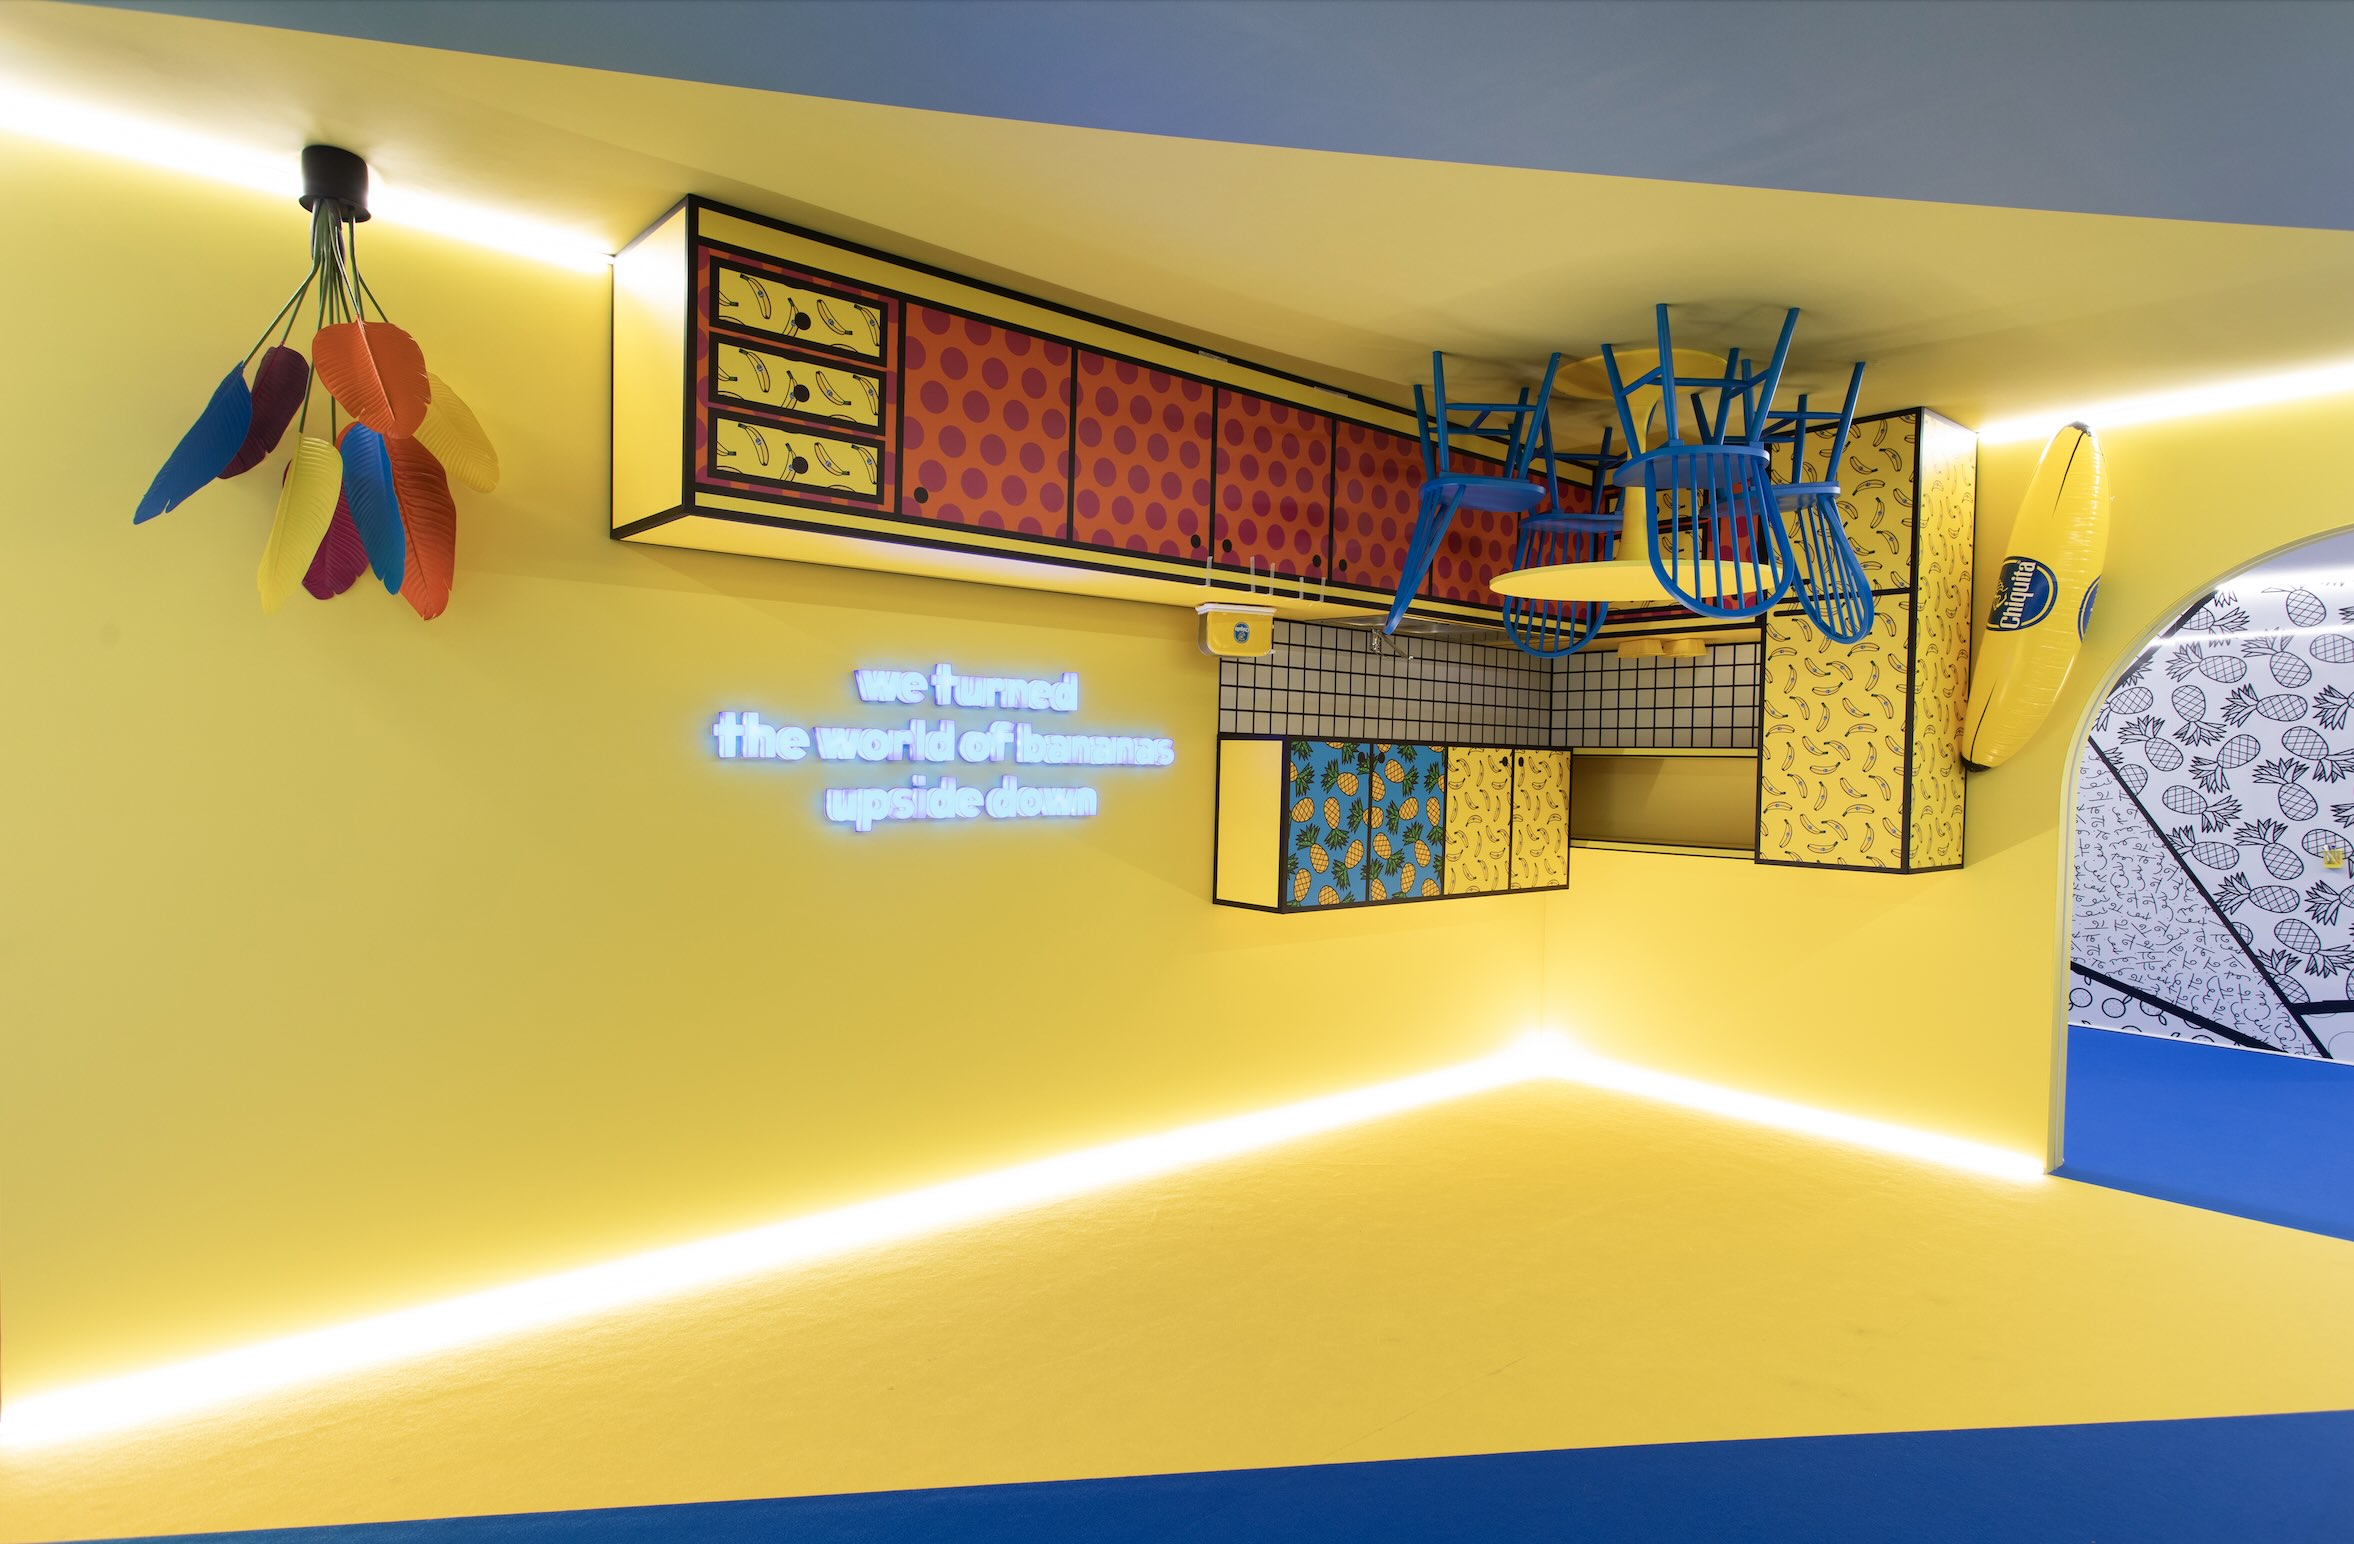 Chiquita voelt zich thuis op Milan Design Week